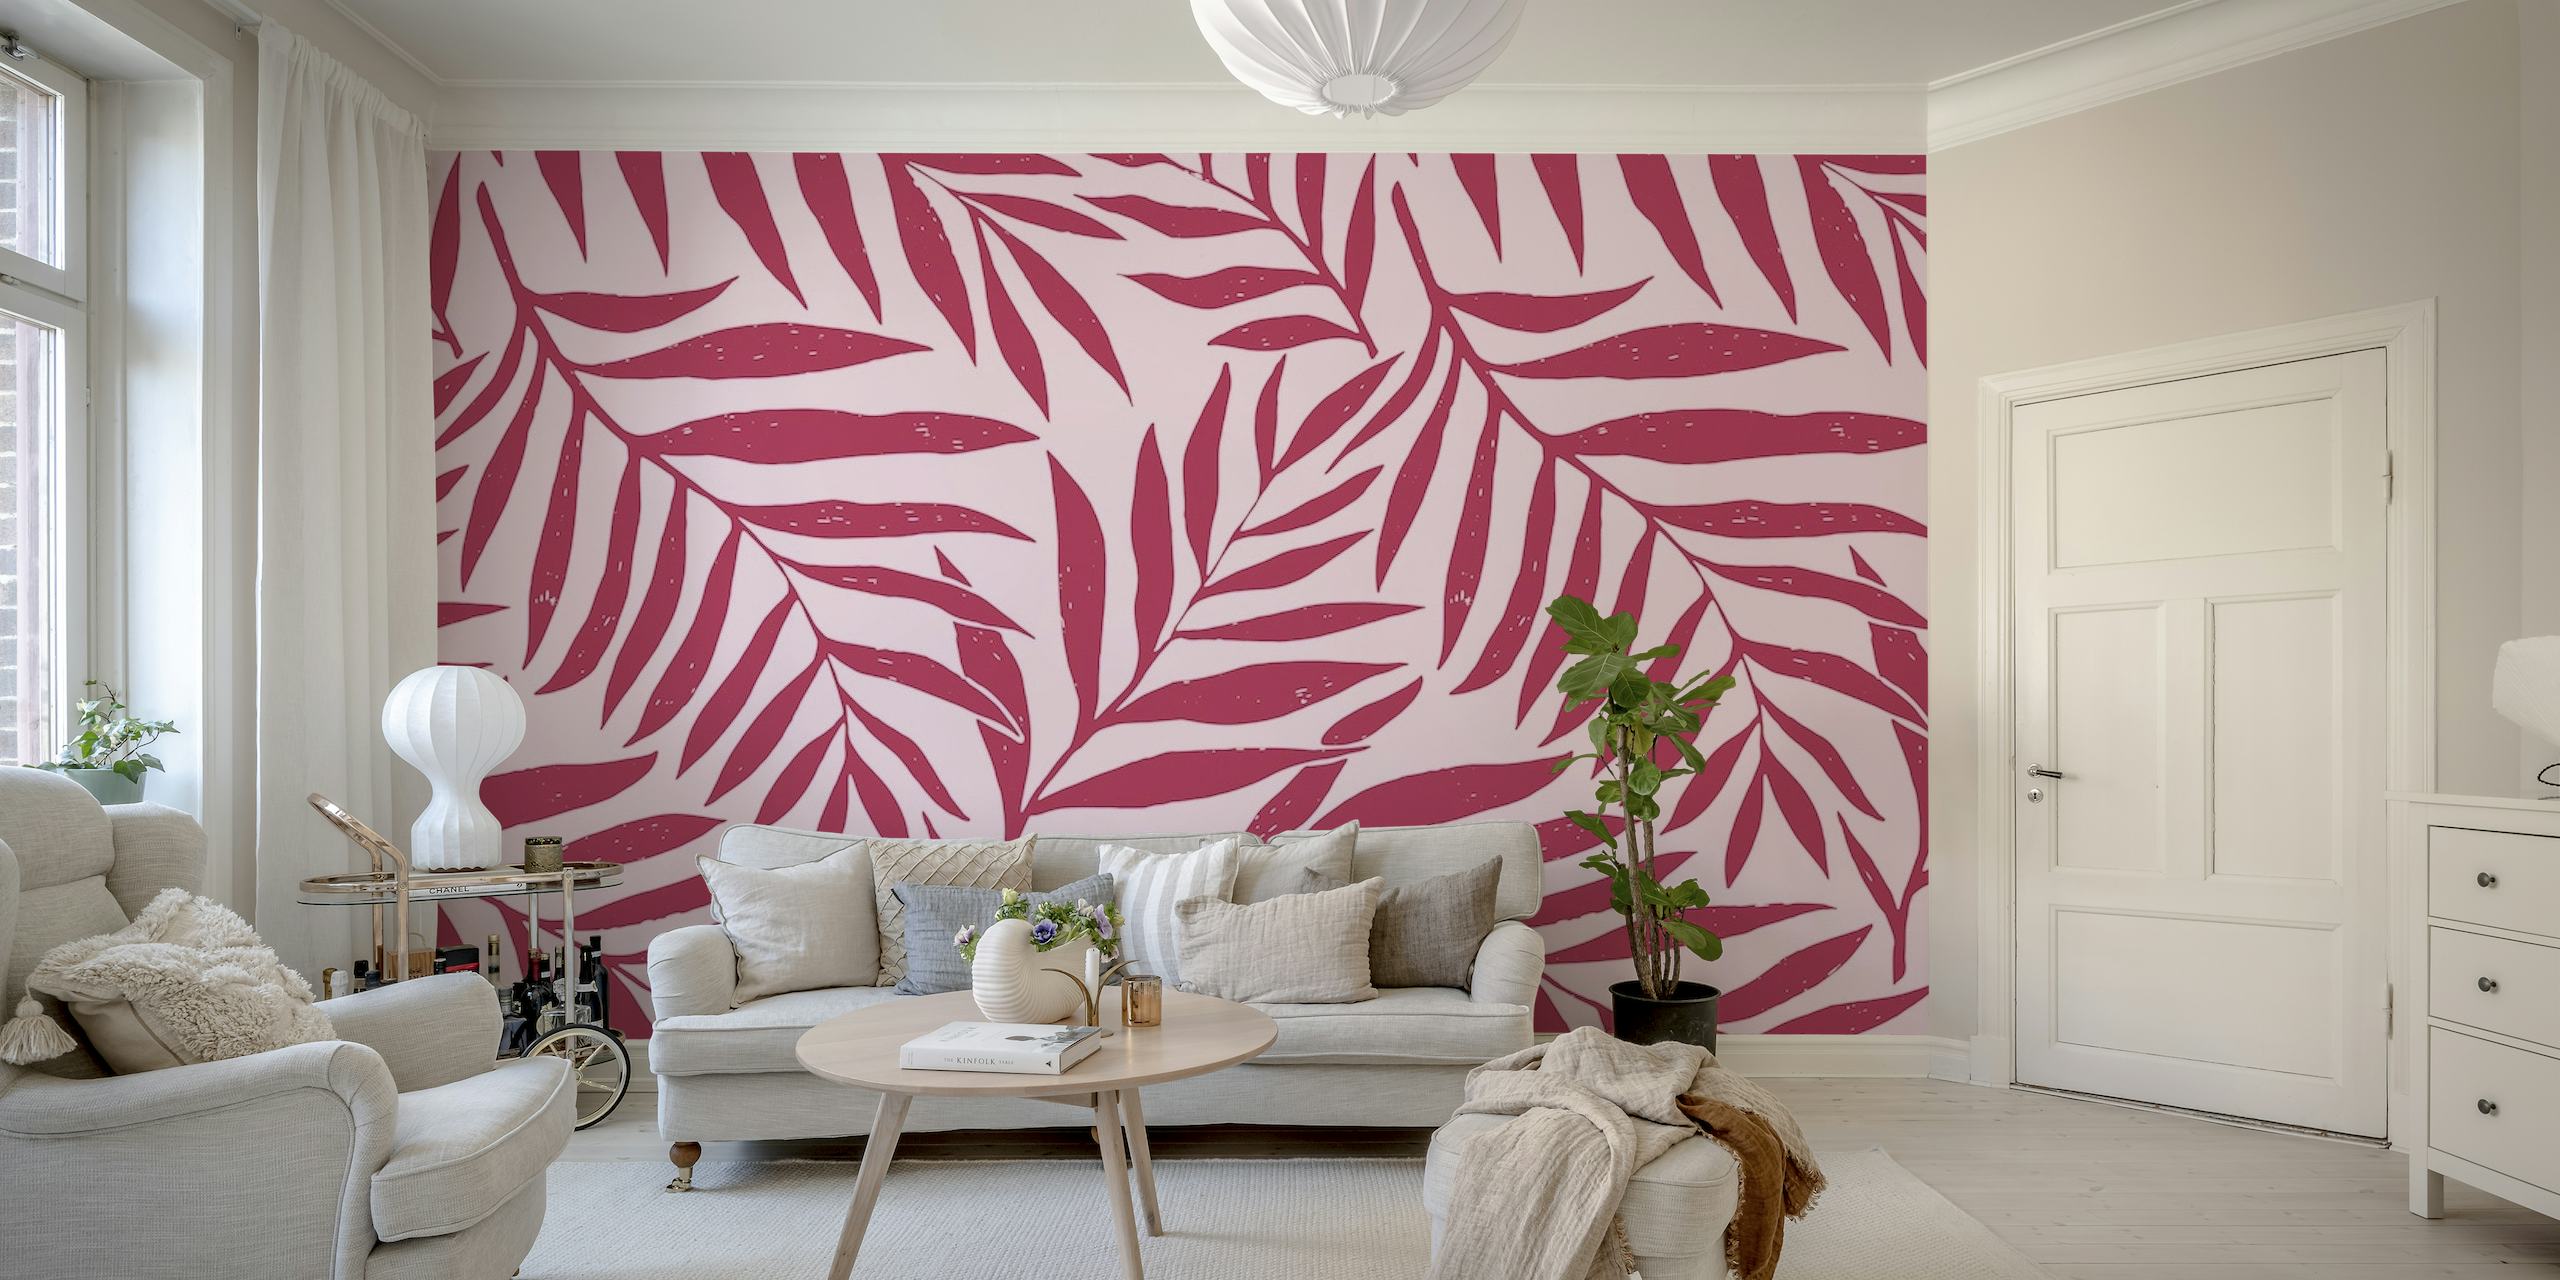 Folhas magenta estilizadas em um fotomural vinílico de parede com fundo rosa suave